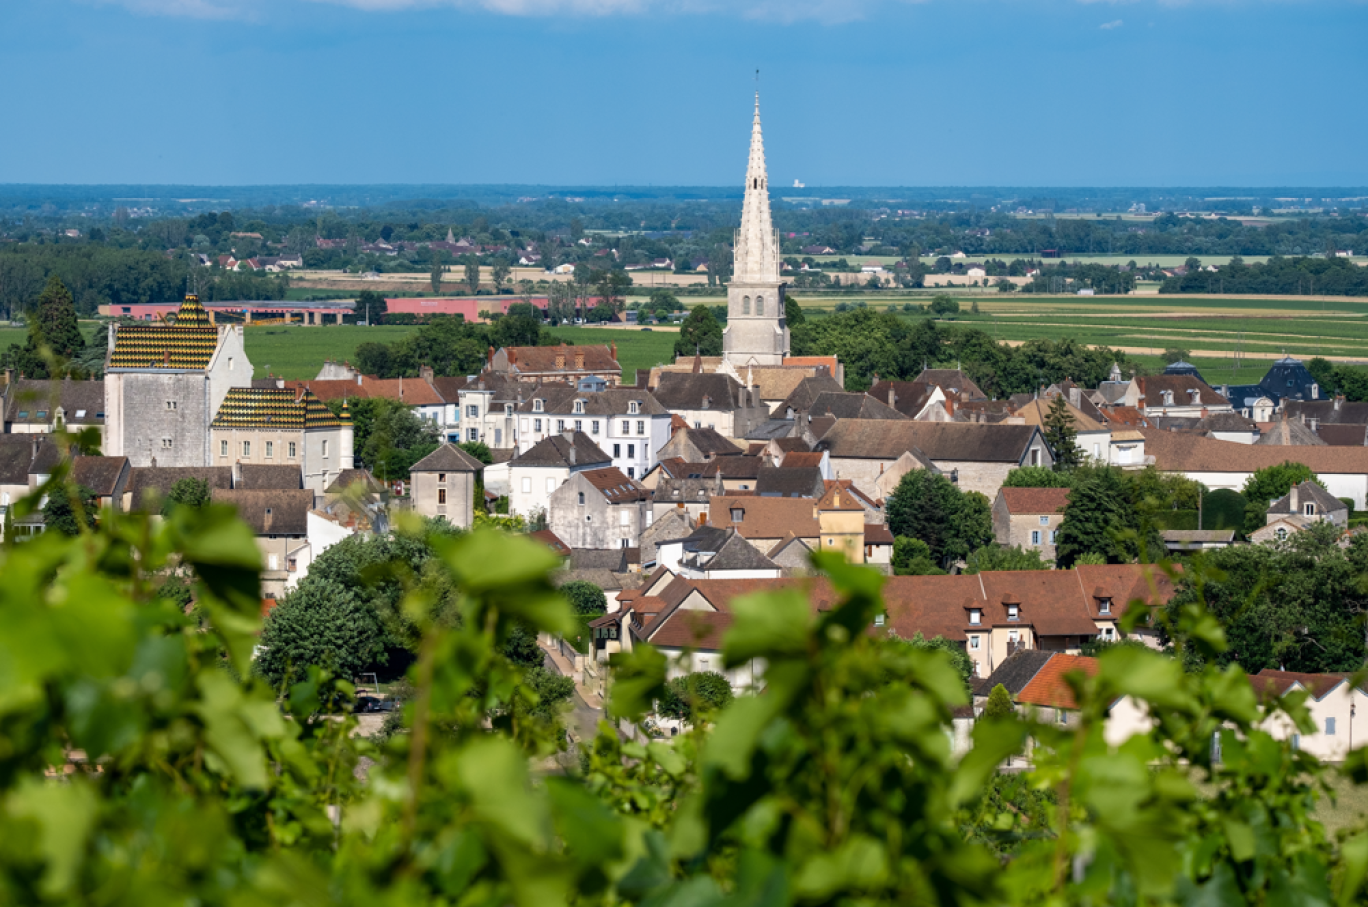  Meursault, fait partie des villages labellisés. © Adobe Stock.